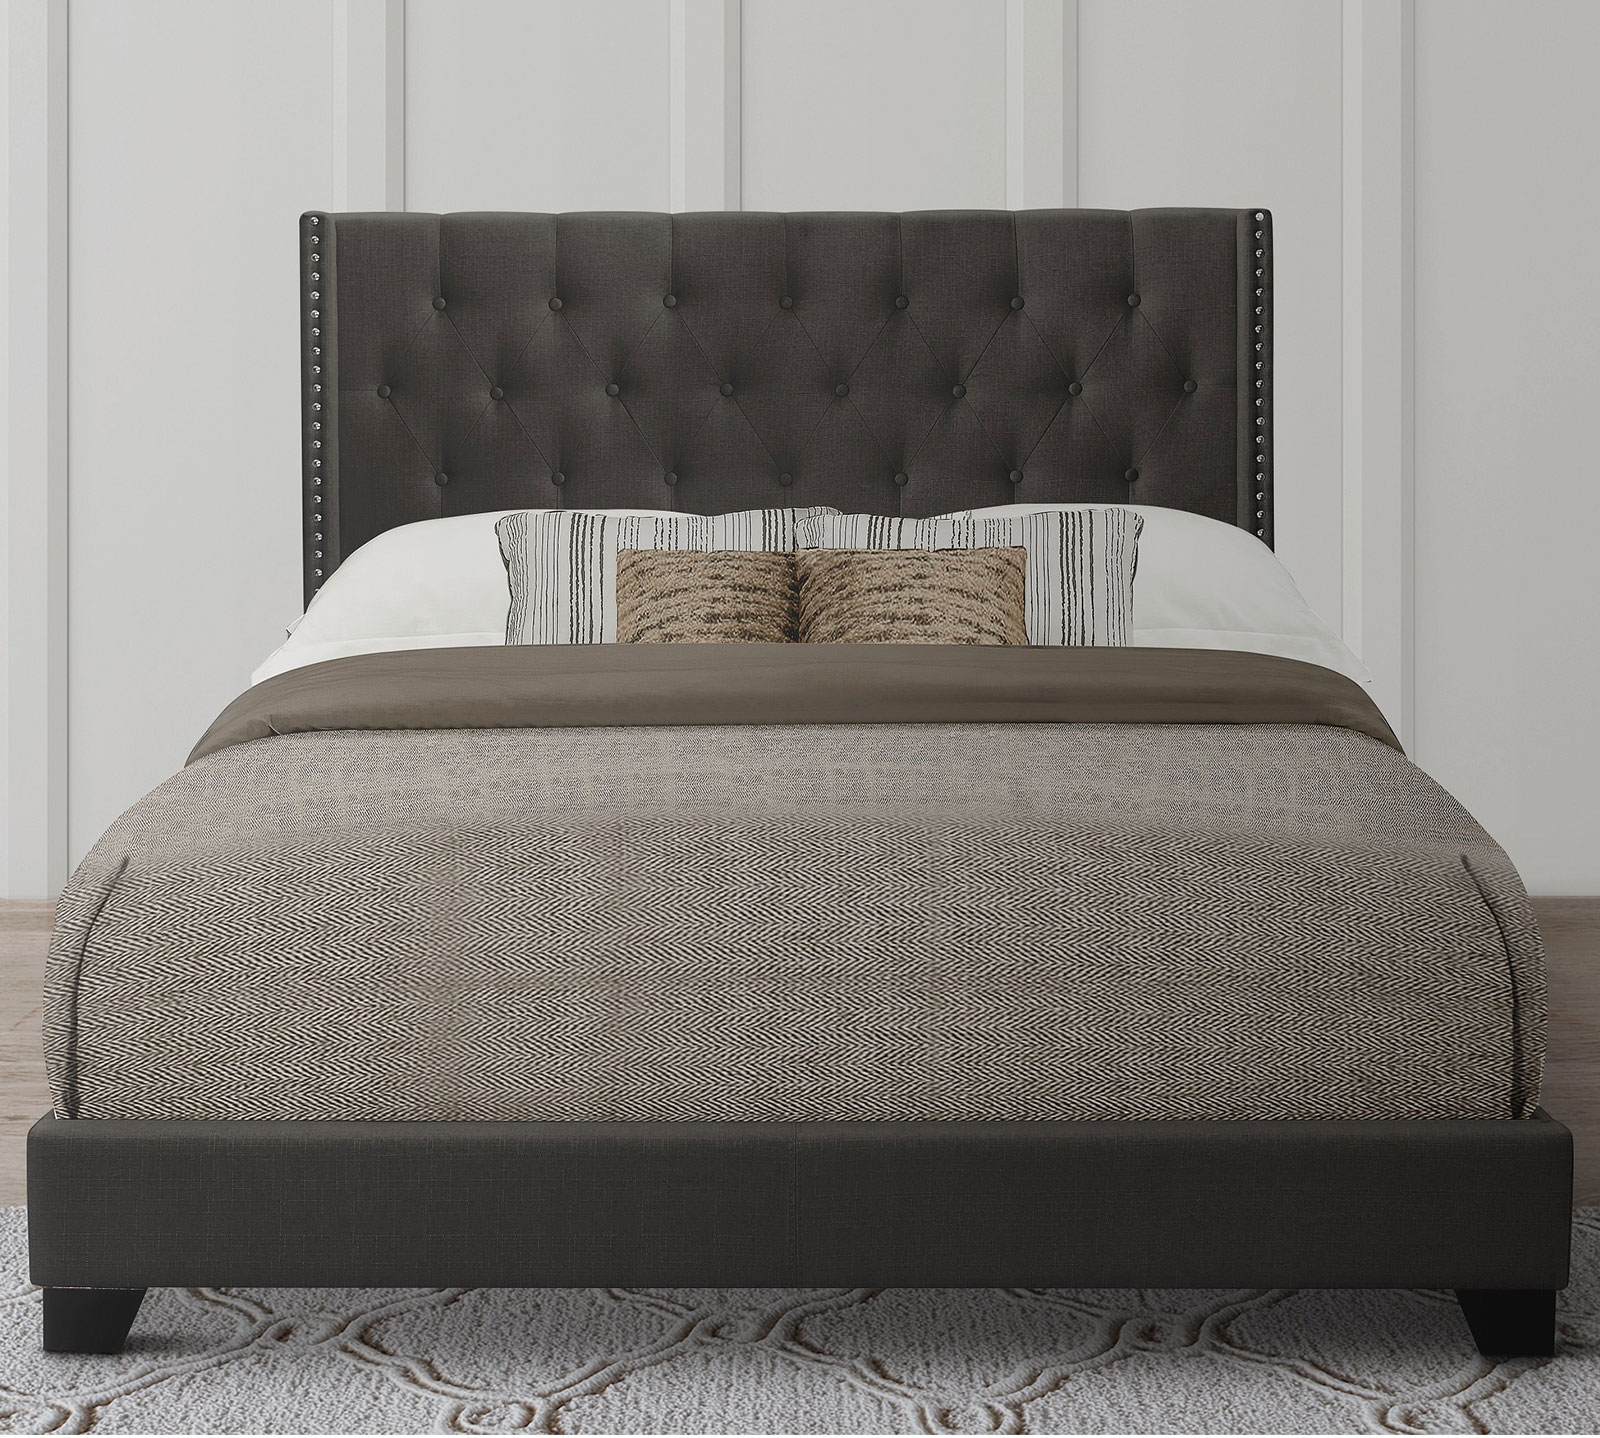 Homelegance Upholstered Bed Set | Queen | Avery Bed Frame & Headboard | Dark Gray